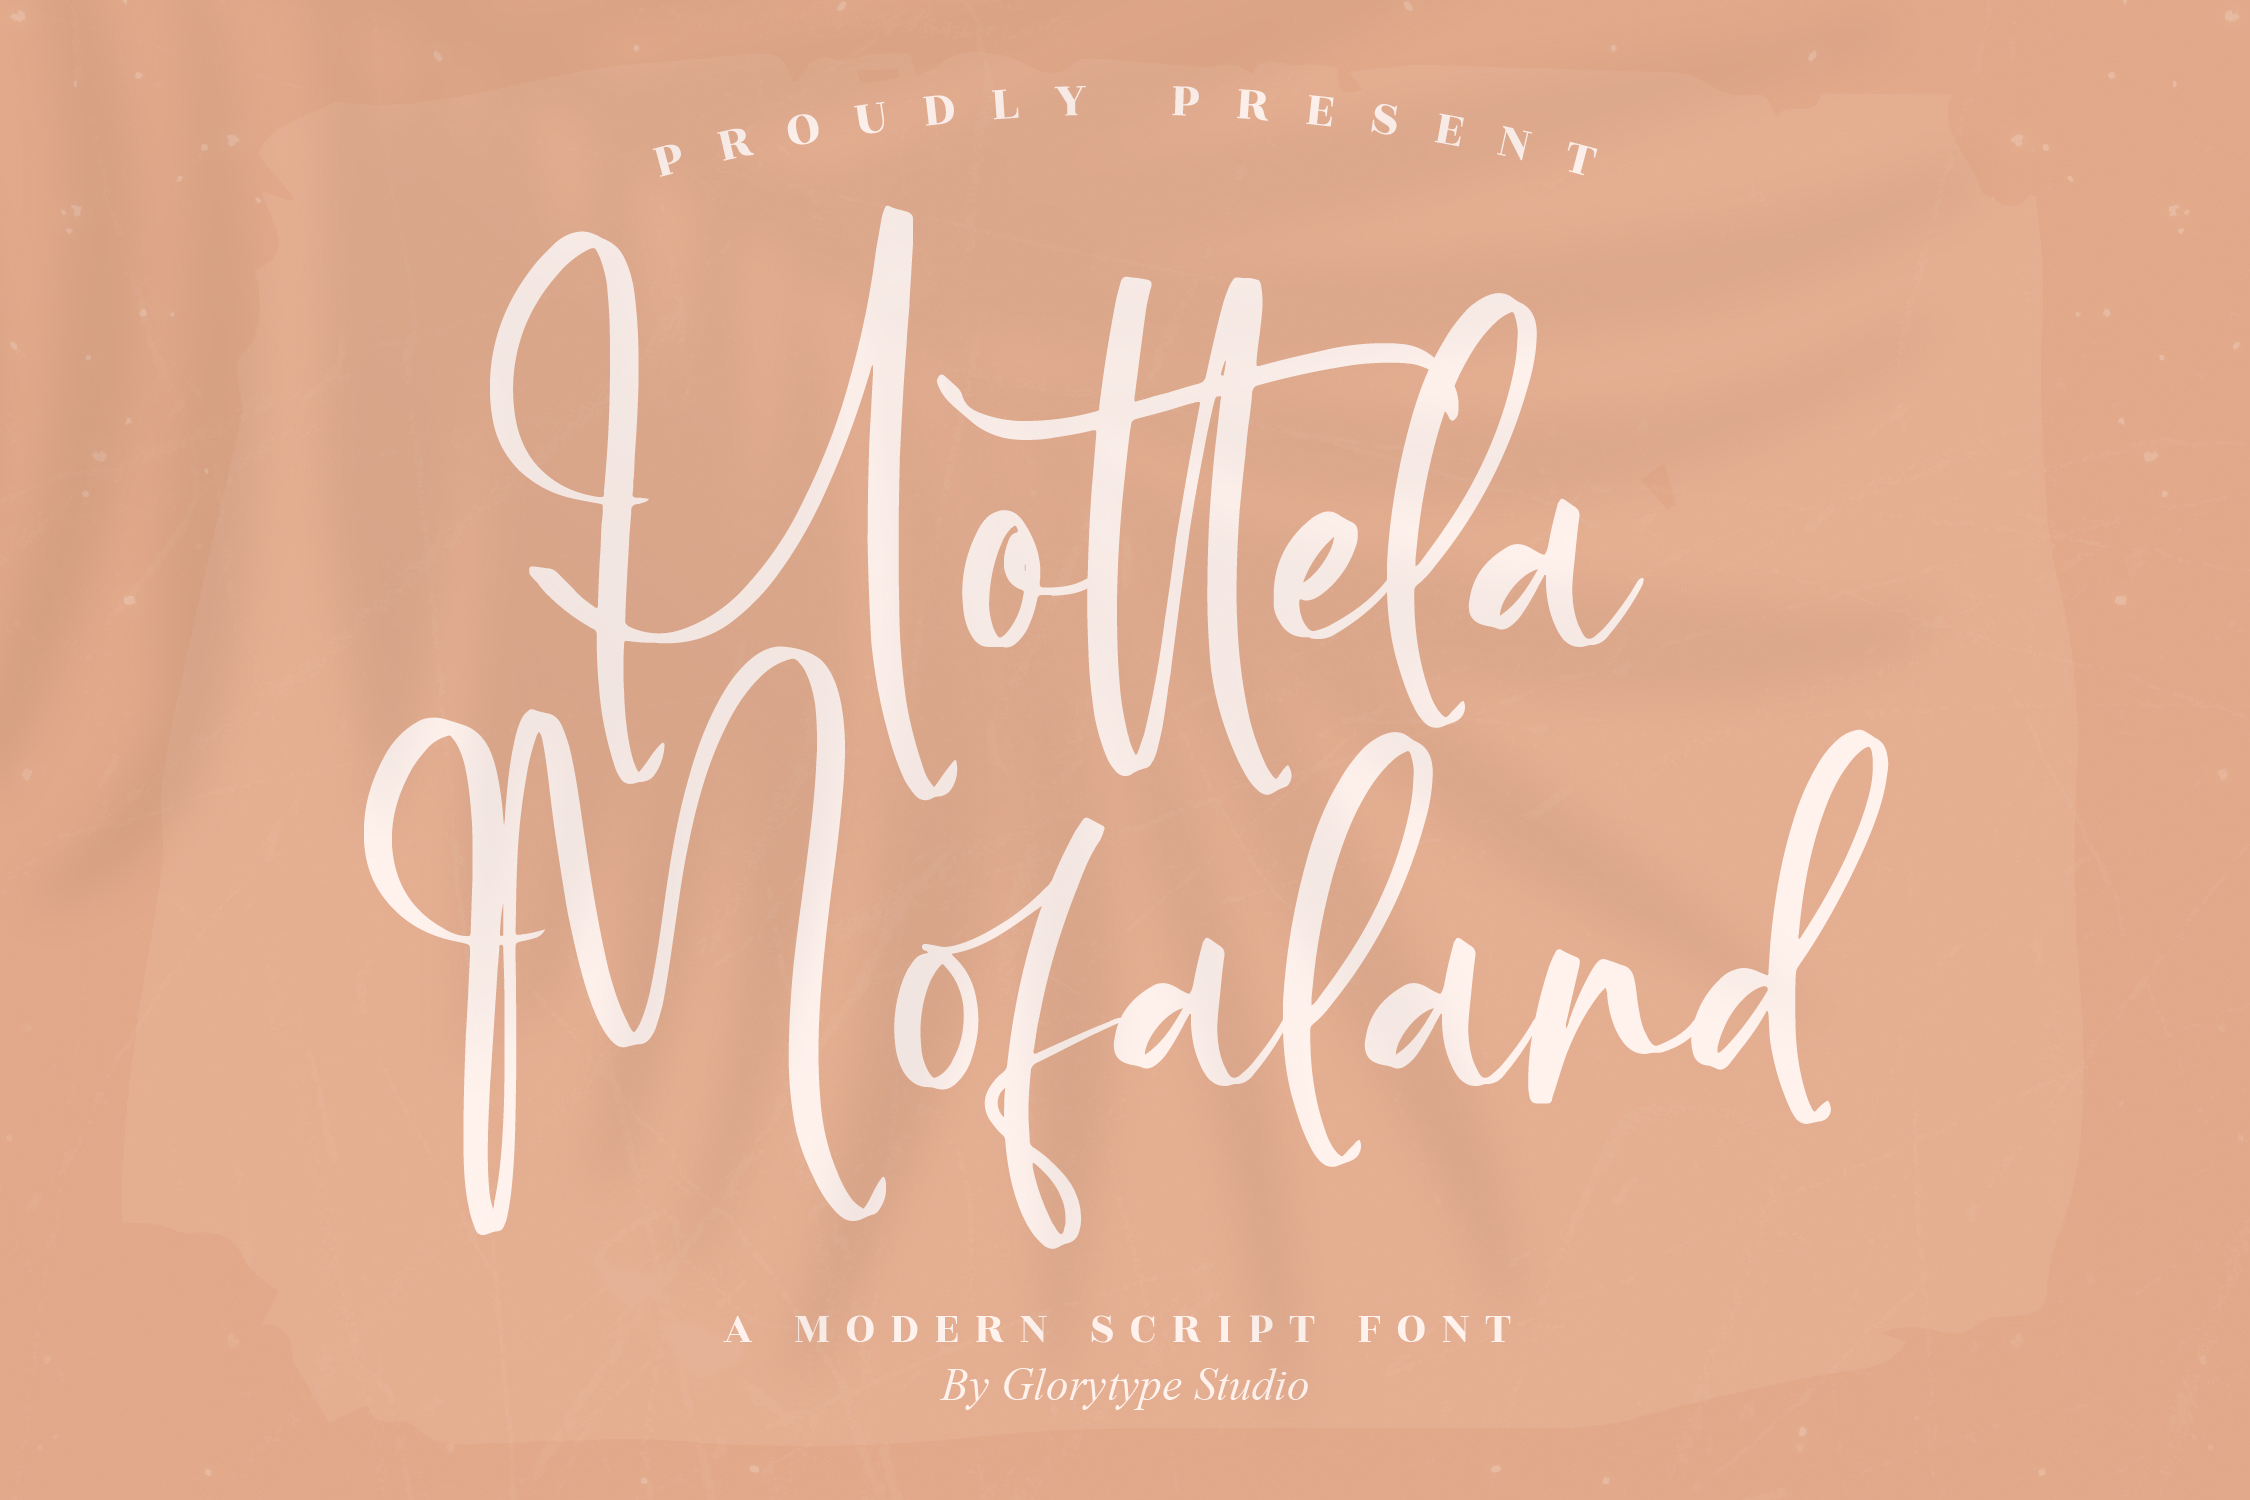 Hottela Mofaland